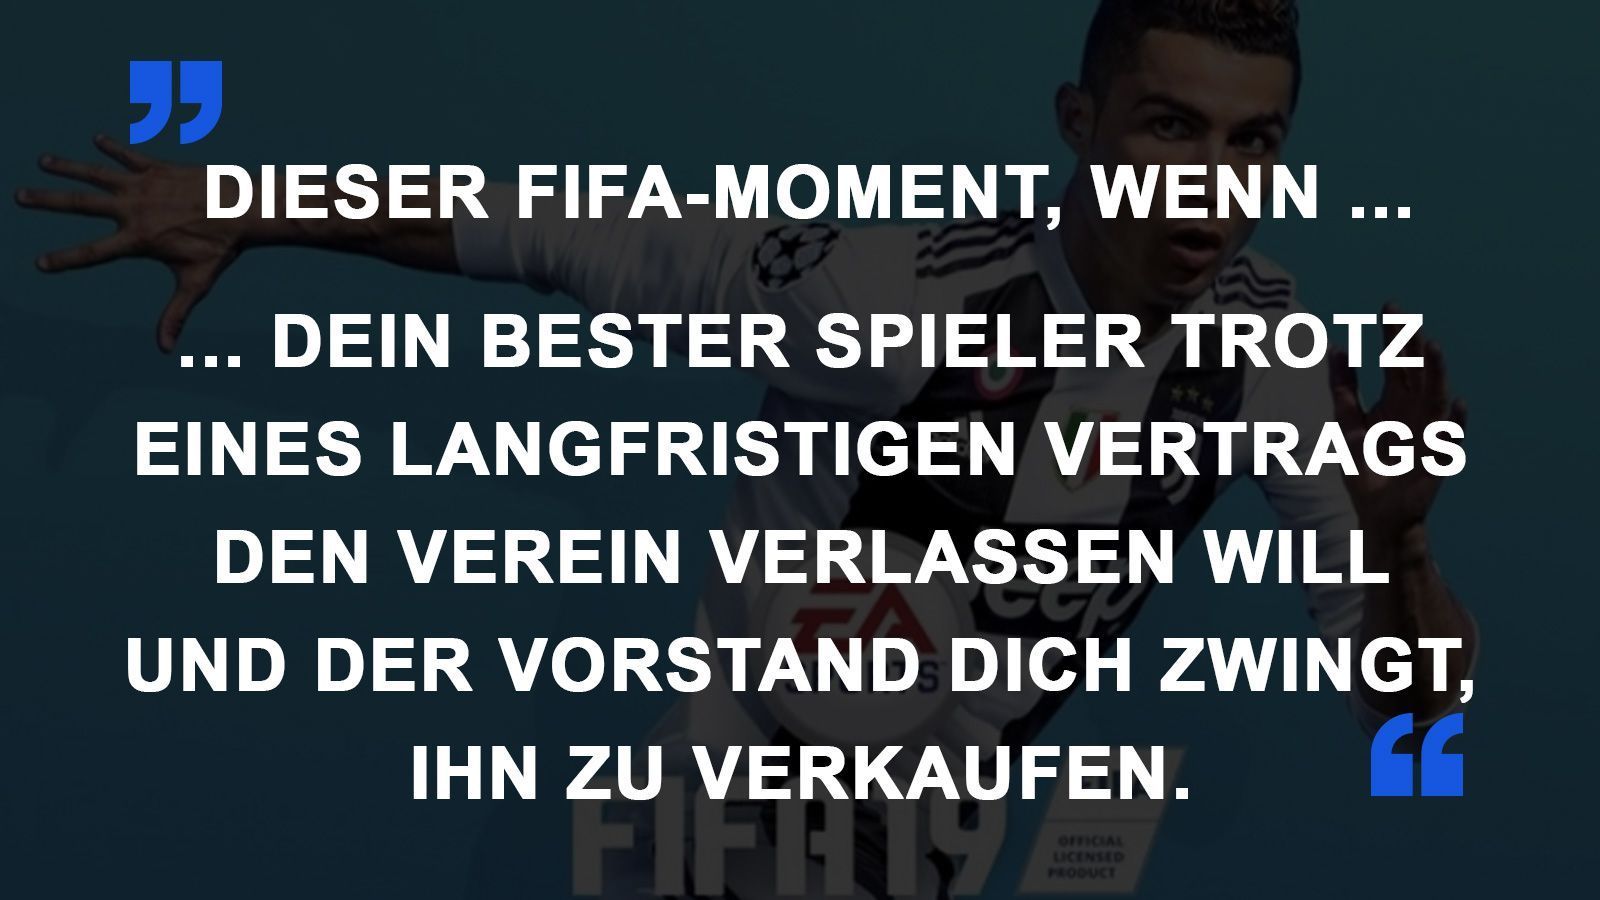 
                <strong>FIFA Momente bester Spieler weg</strong><br>
                
              